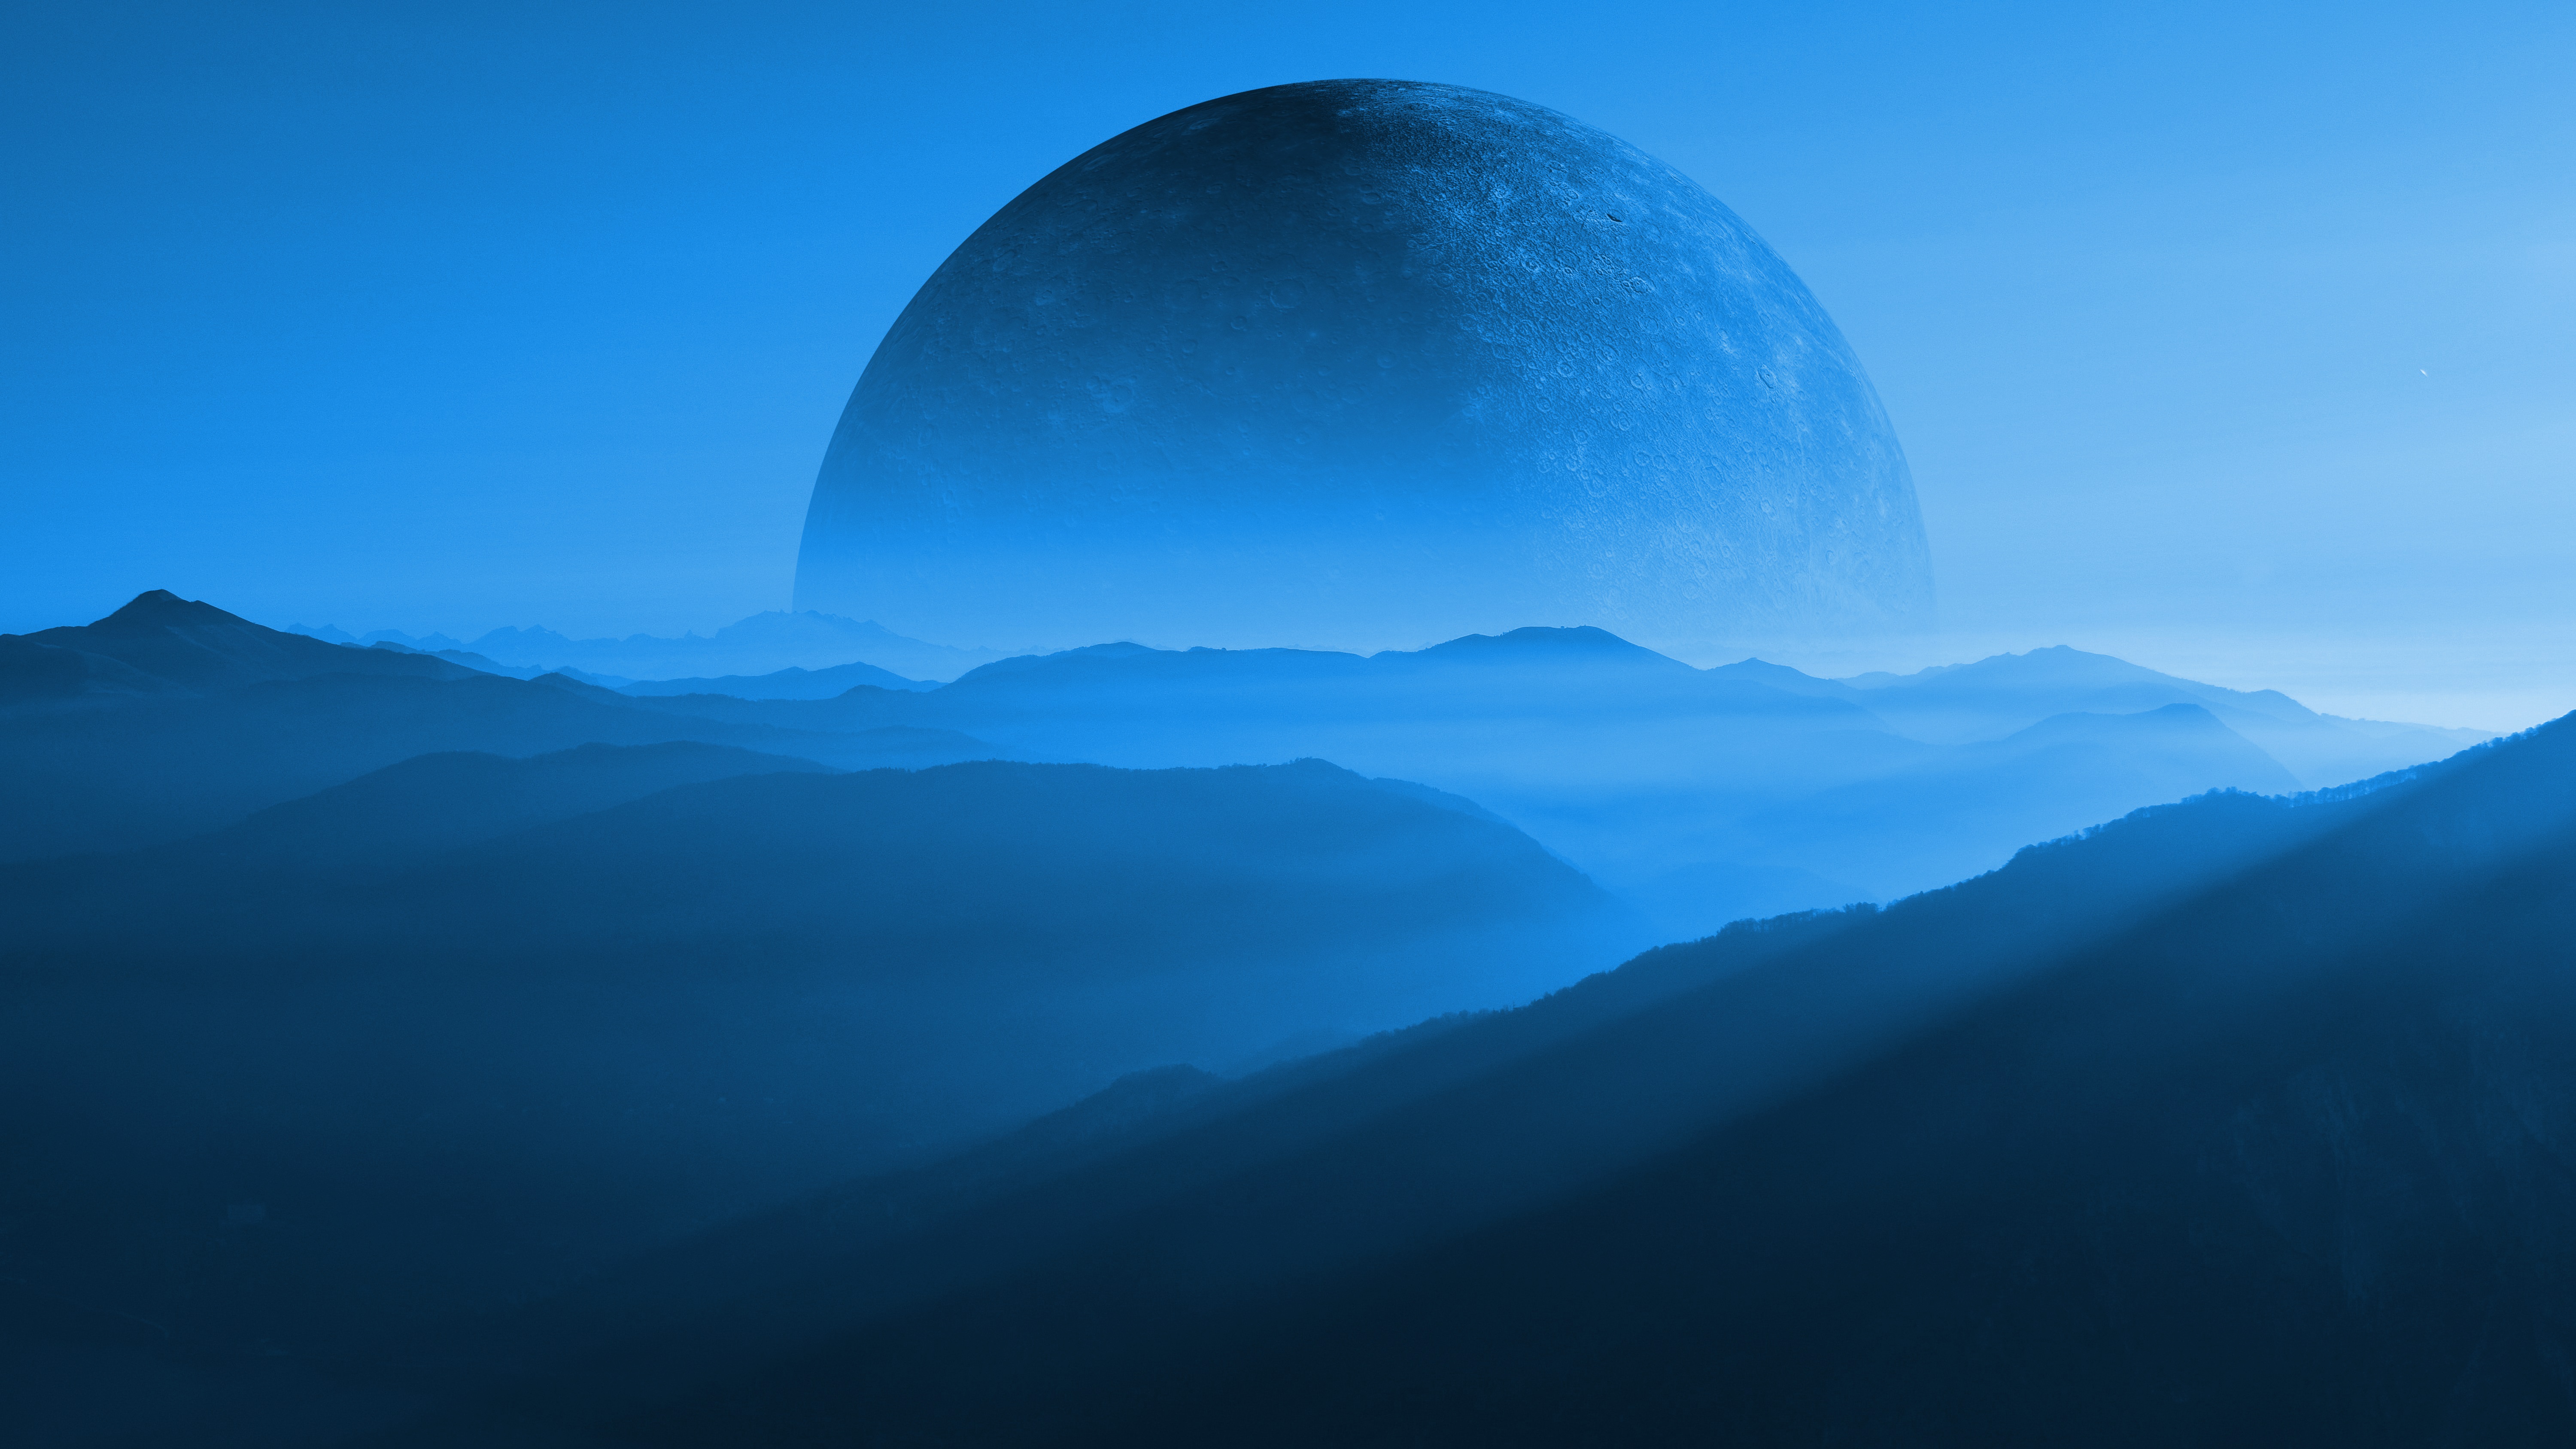 General 6000x3375 mountains CGI planet Moon science fiction blue mist landscape hills